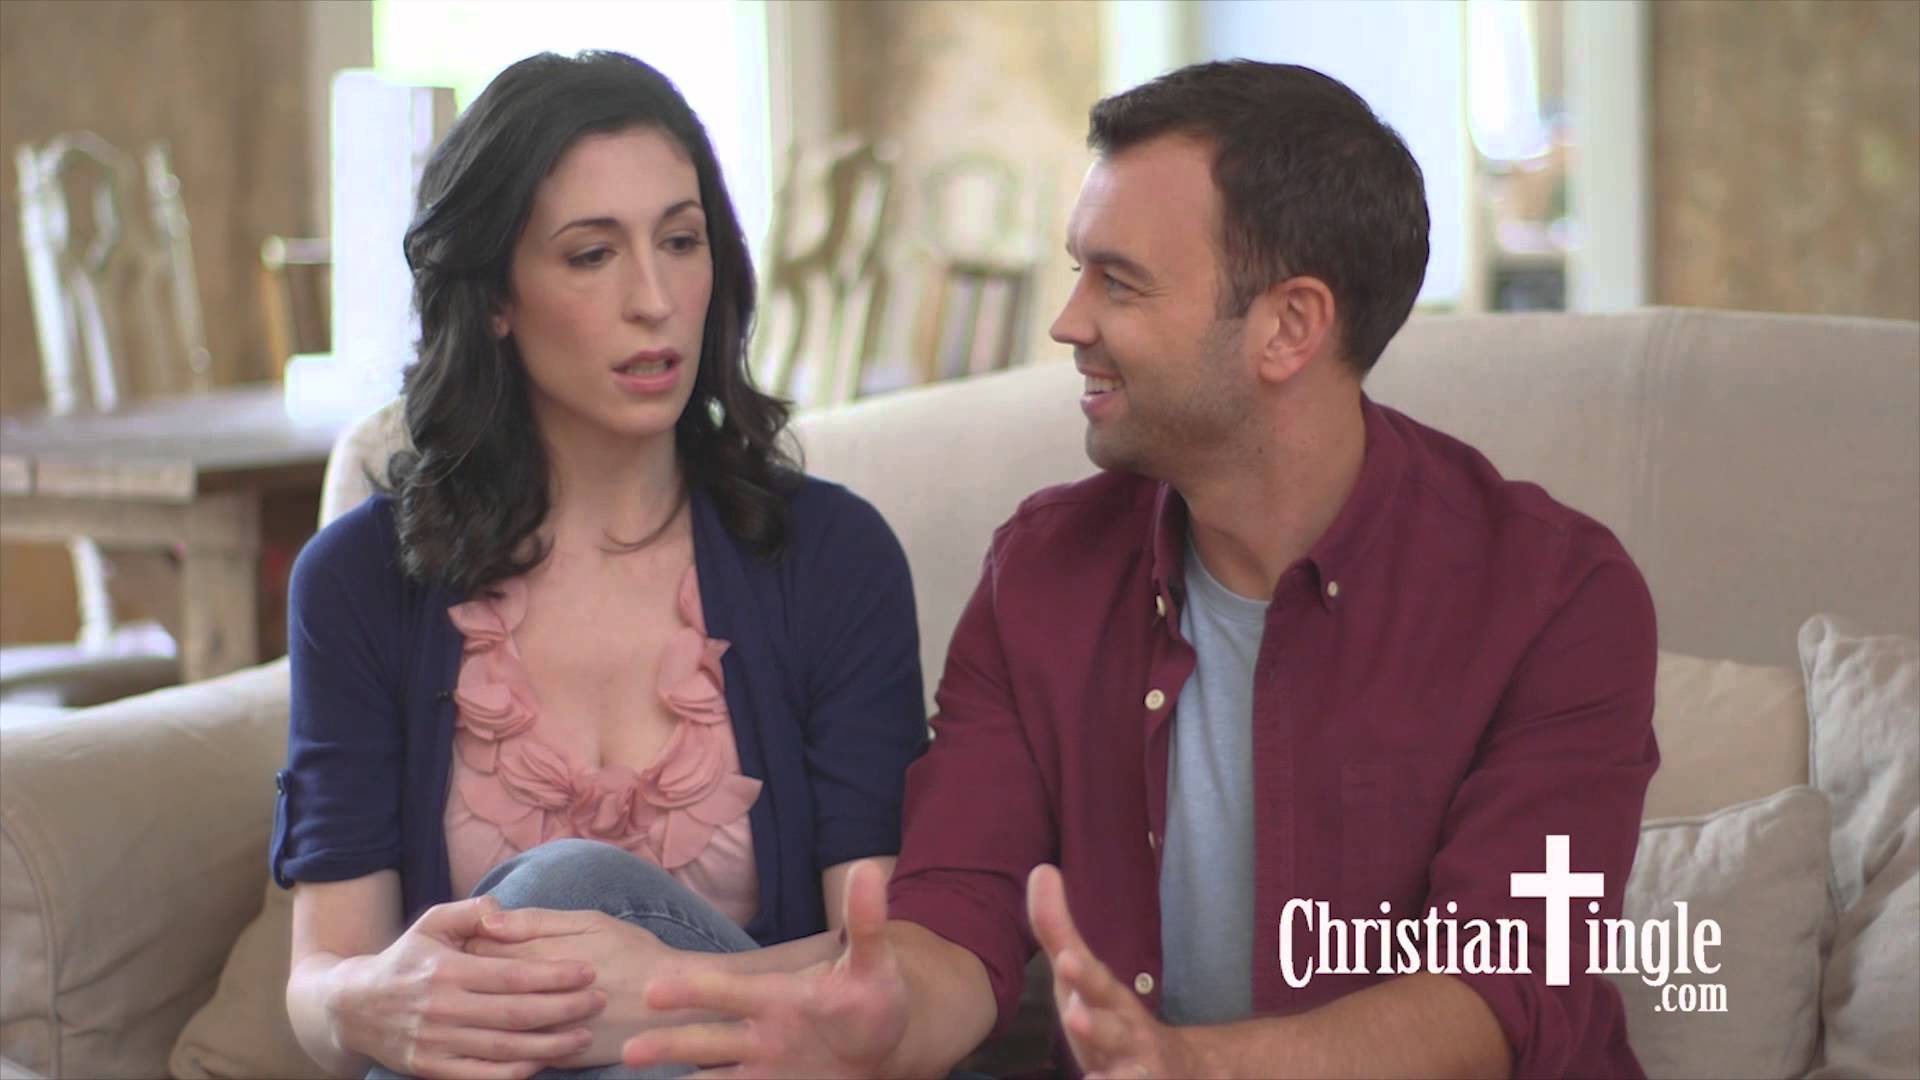 Christian singles online dating beste online christian dating sites